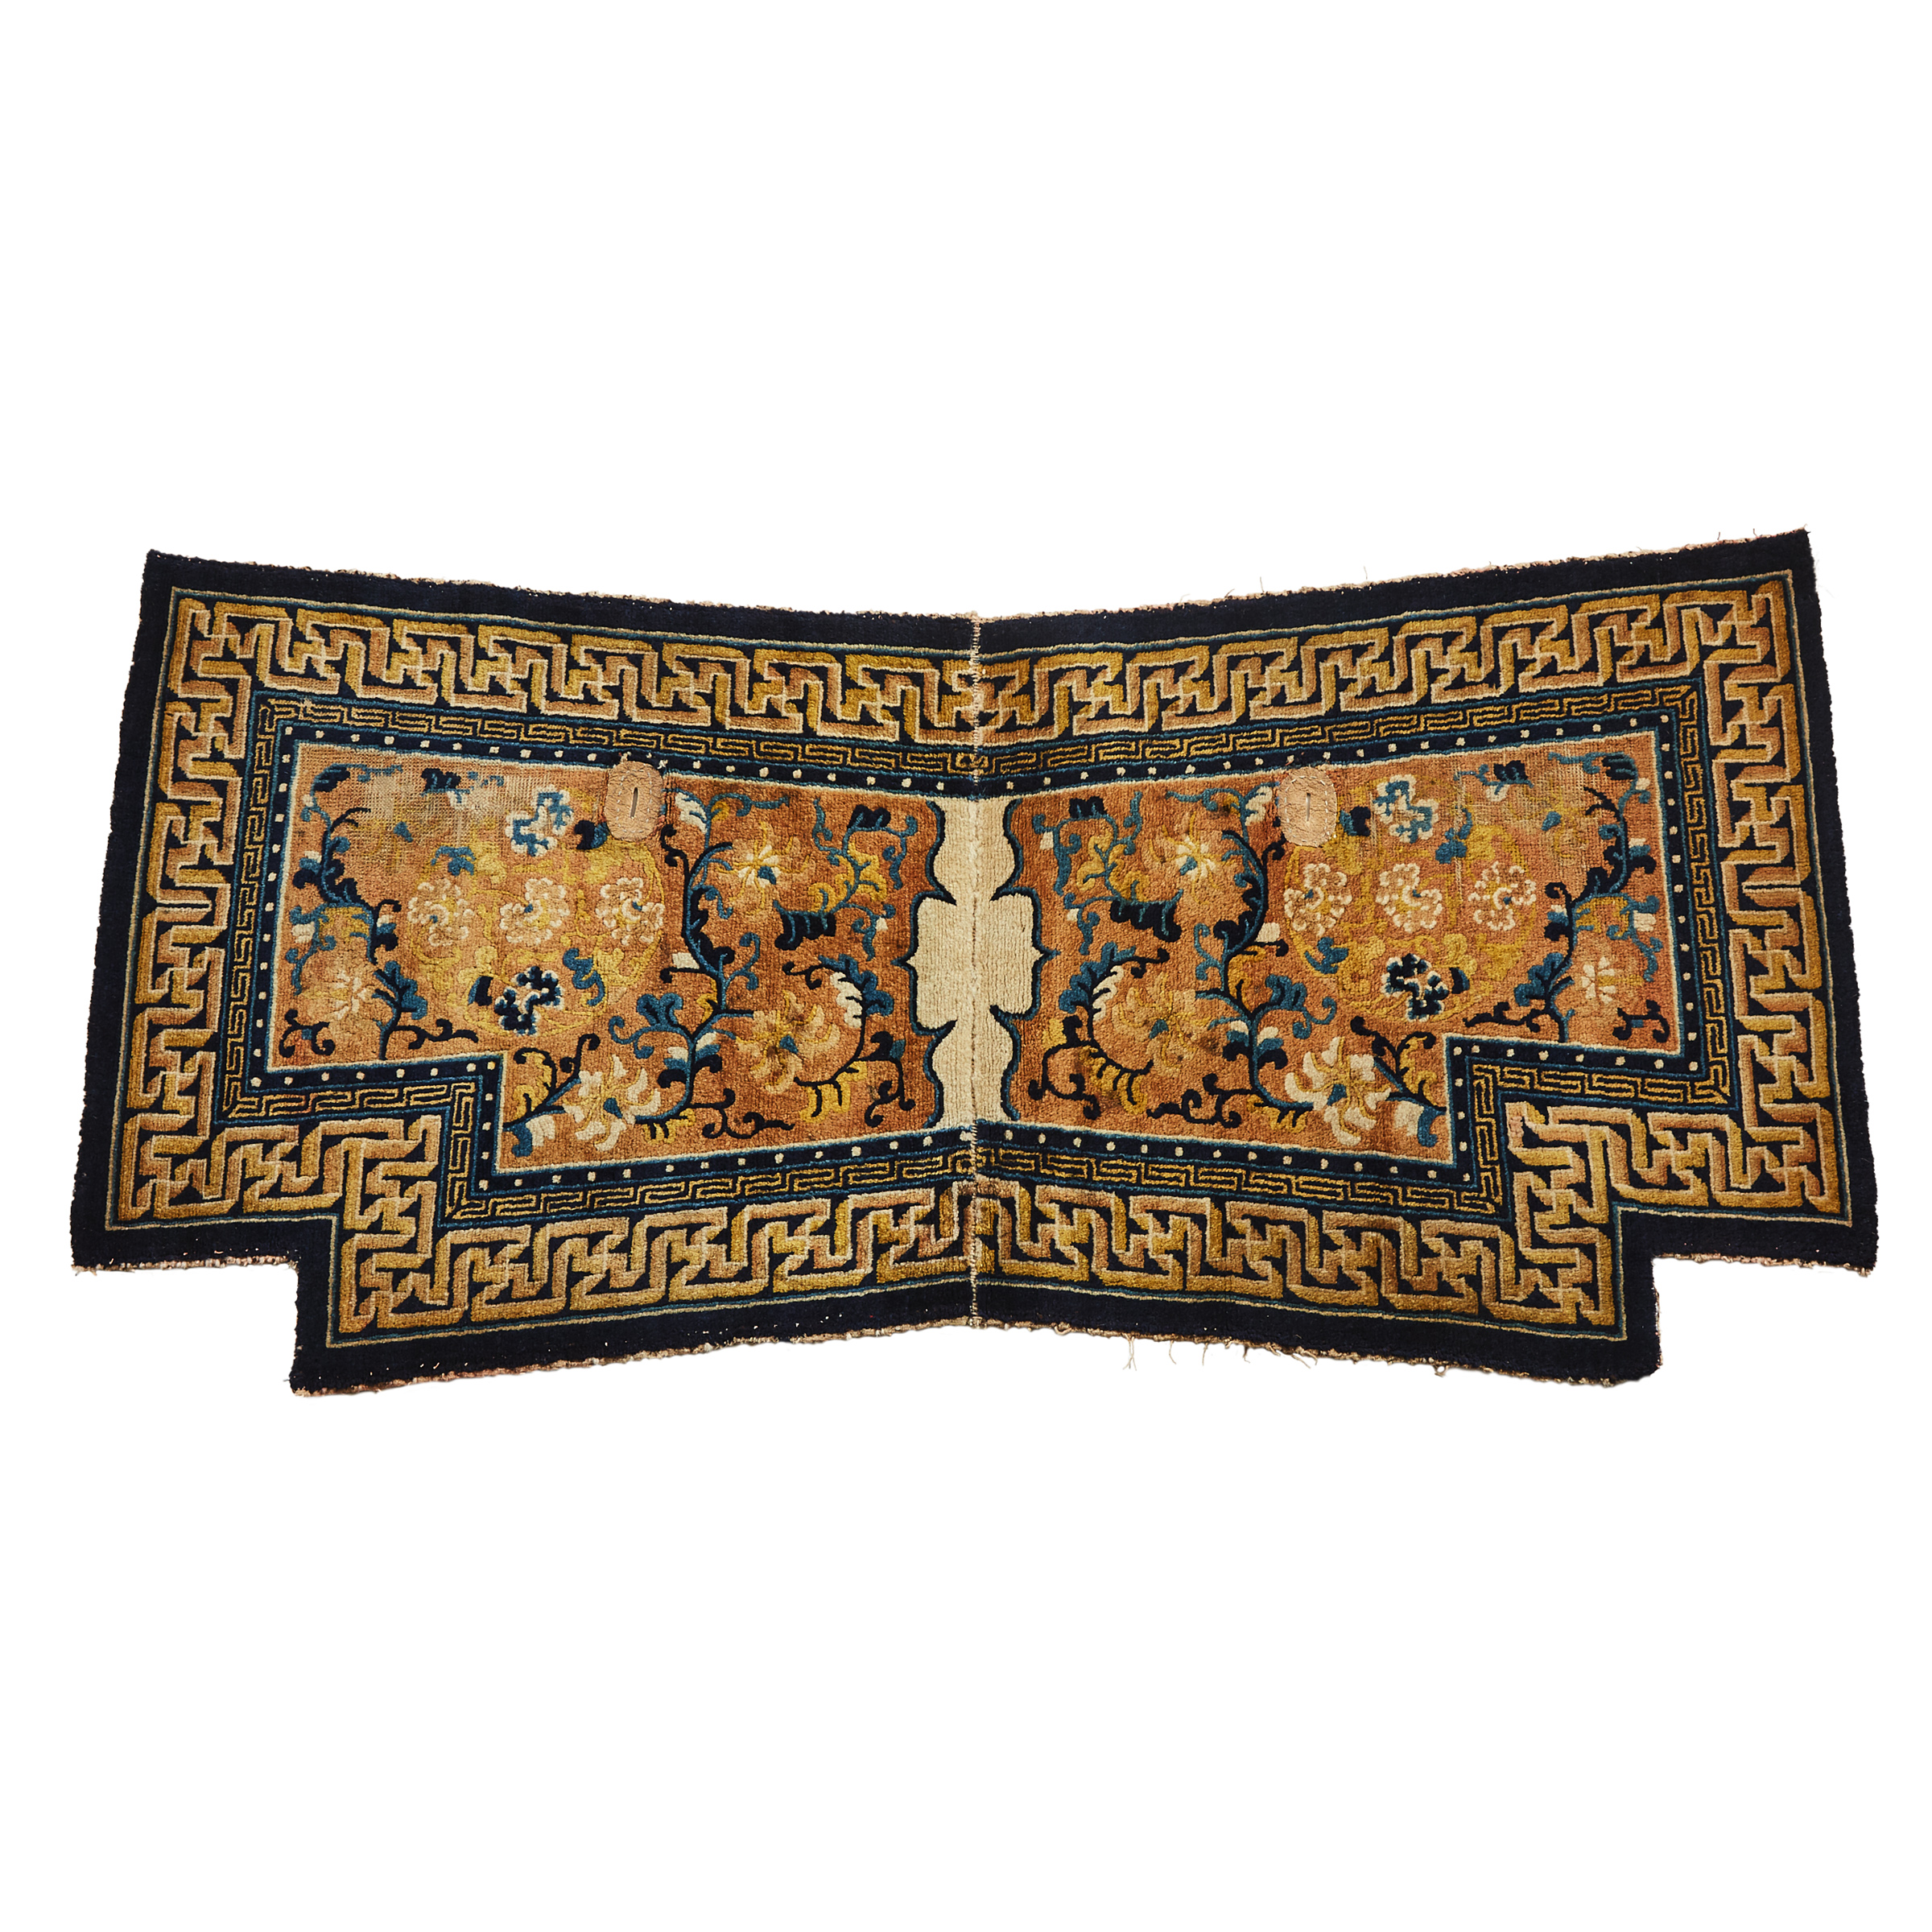 Chinese Ningxia Saddle Blanket, late 19th century